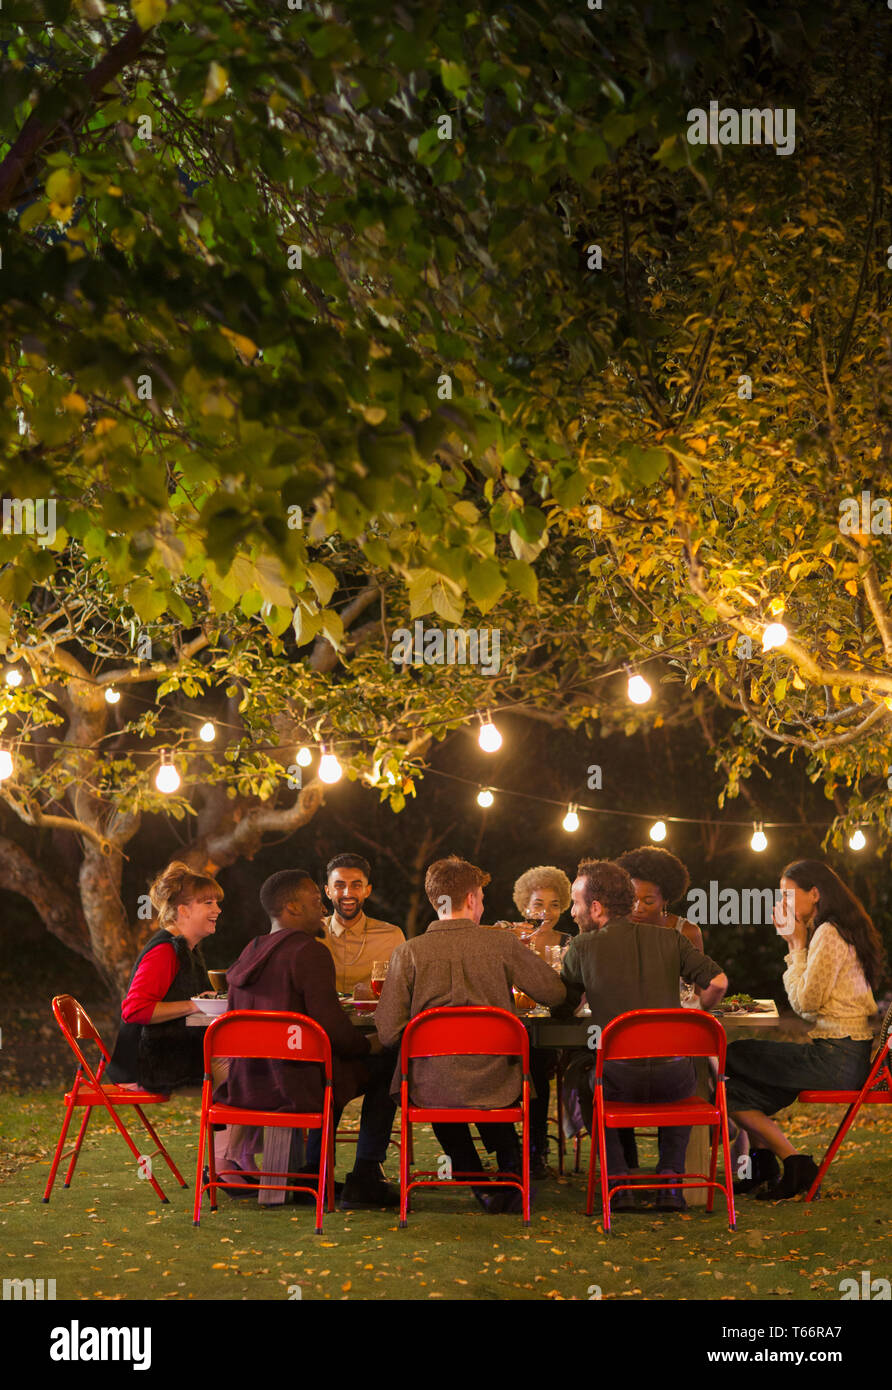 Freunde genießen das Abendessen Garden Party unter Bäume mit Lichterketten Stockfoto